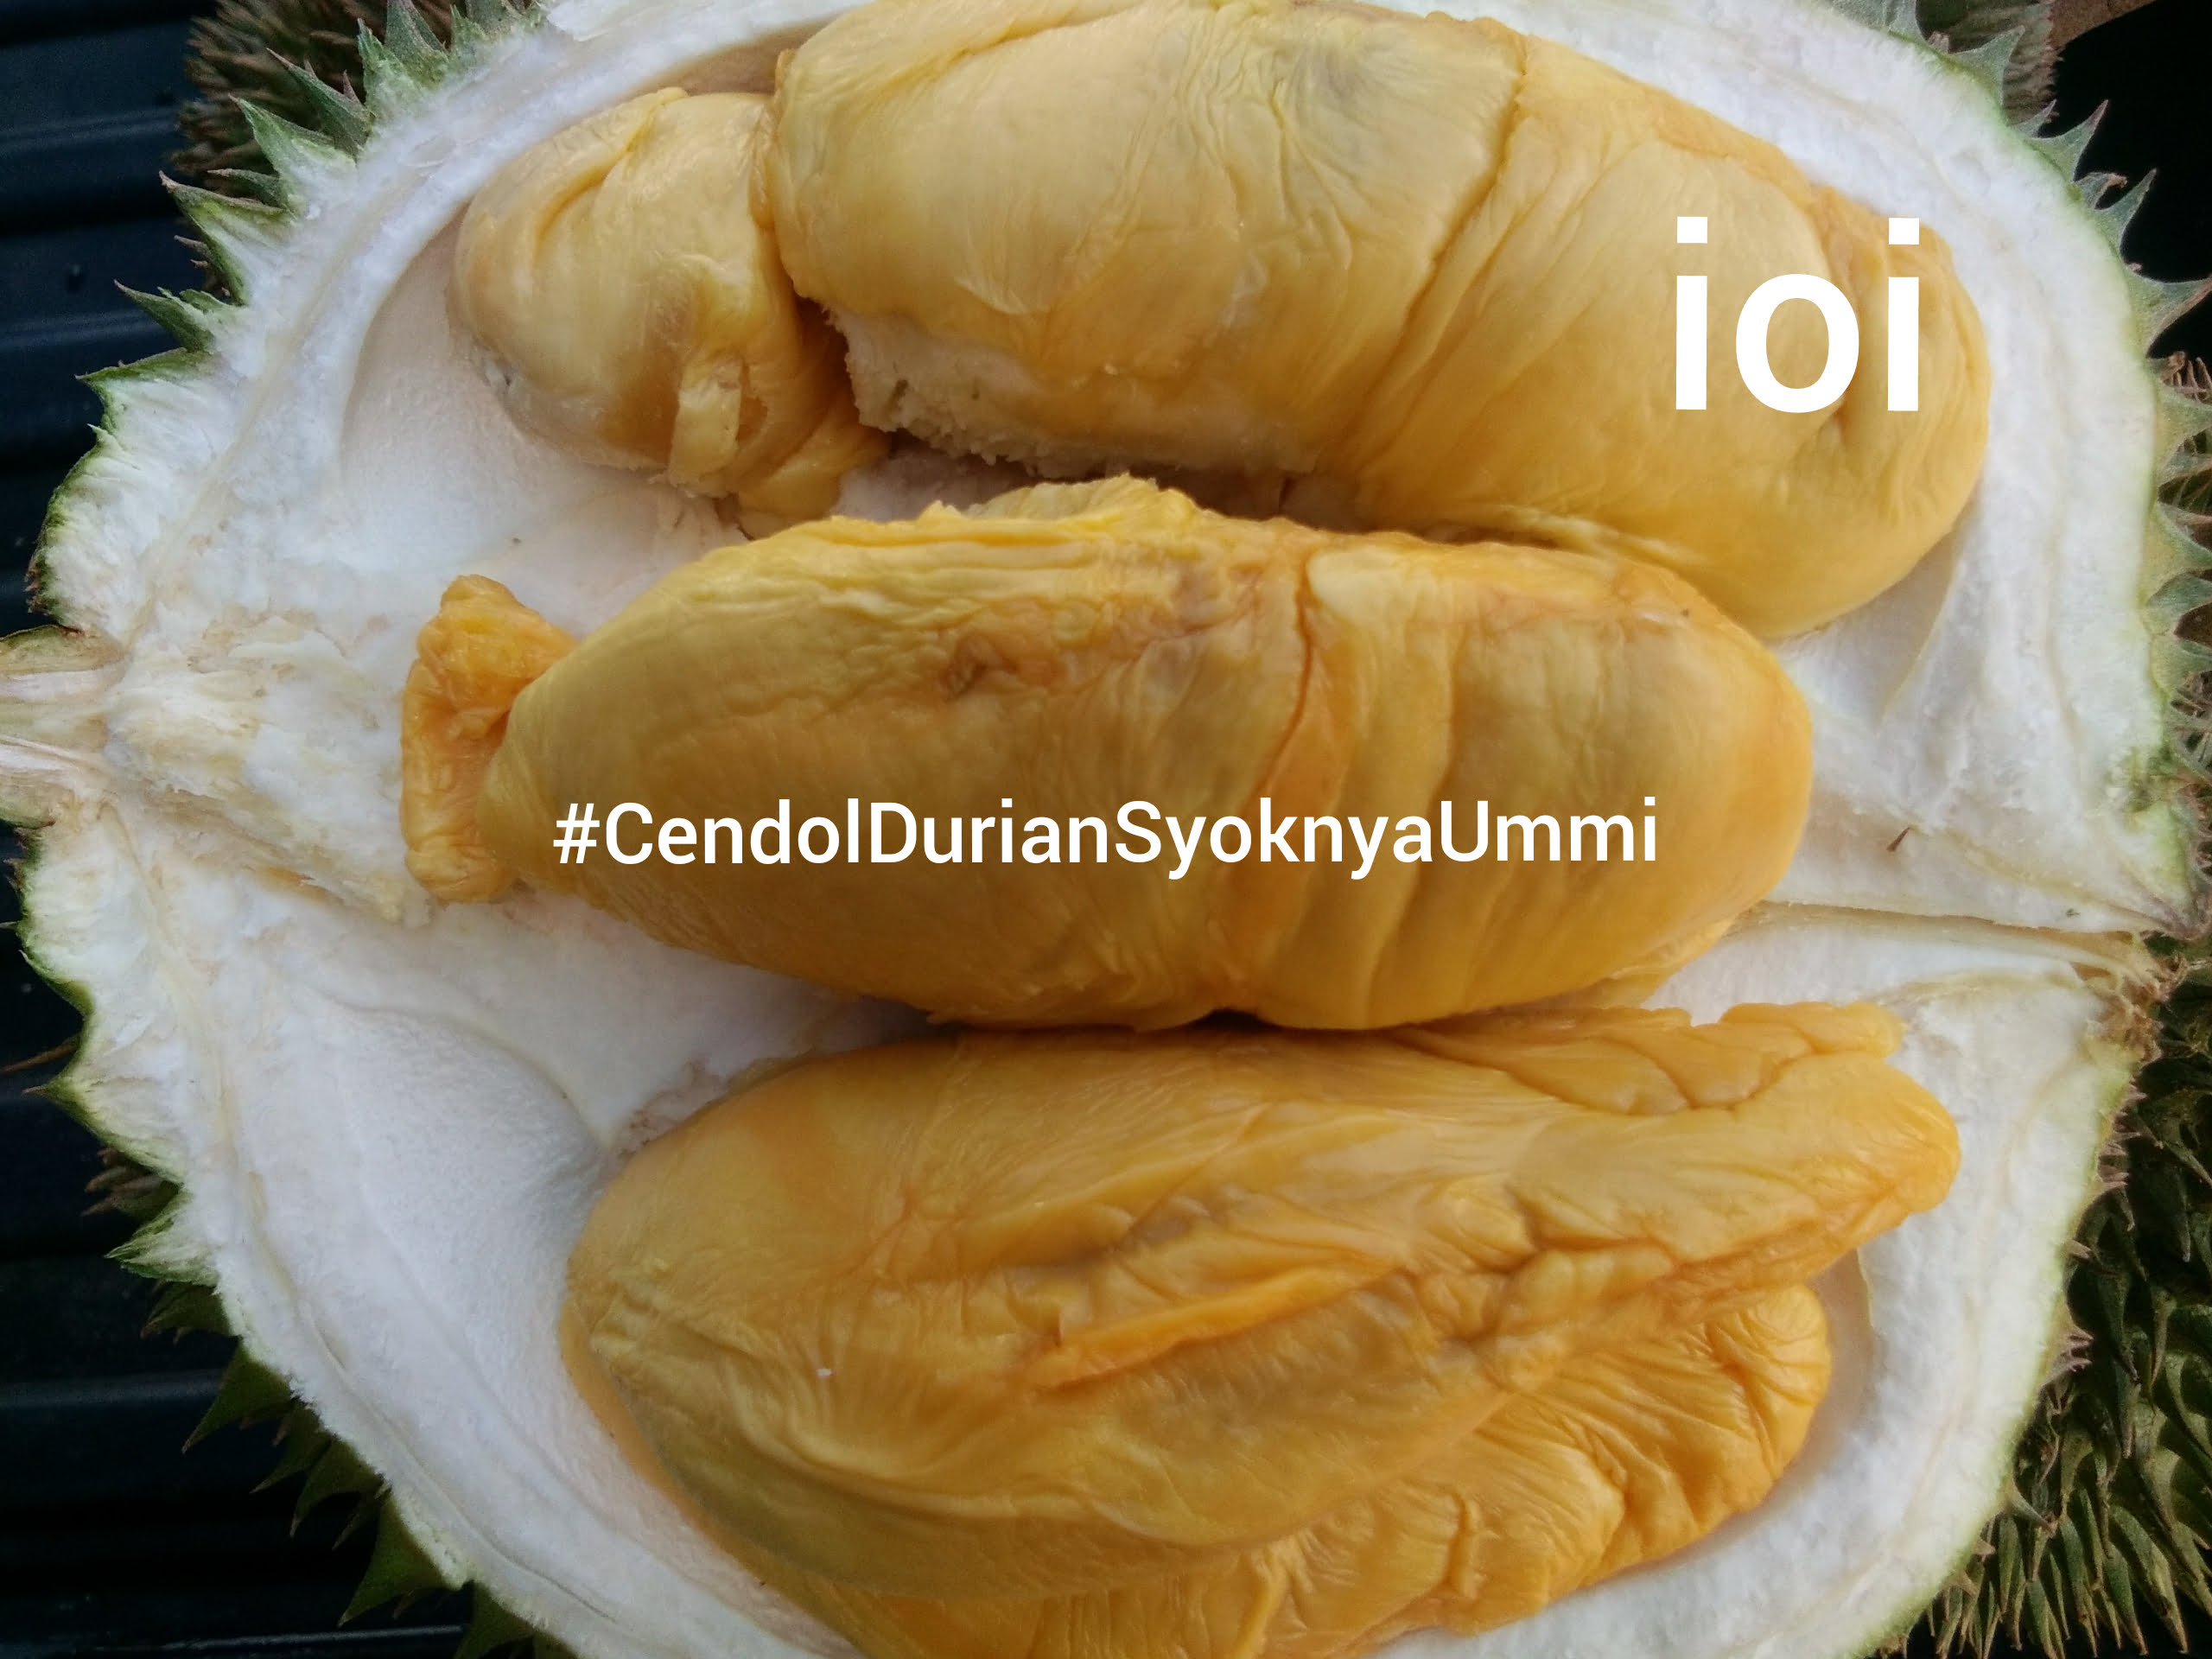 Durian ioi 101 mas Muar